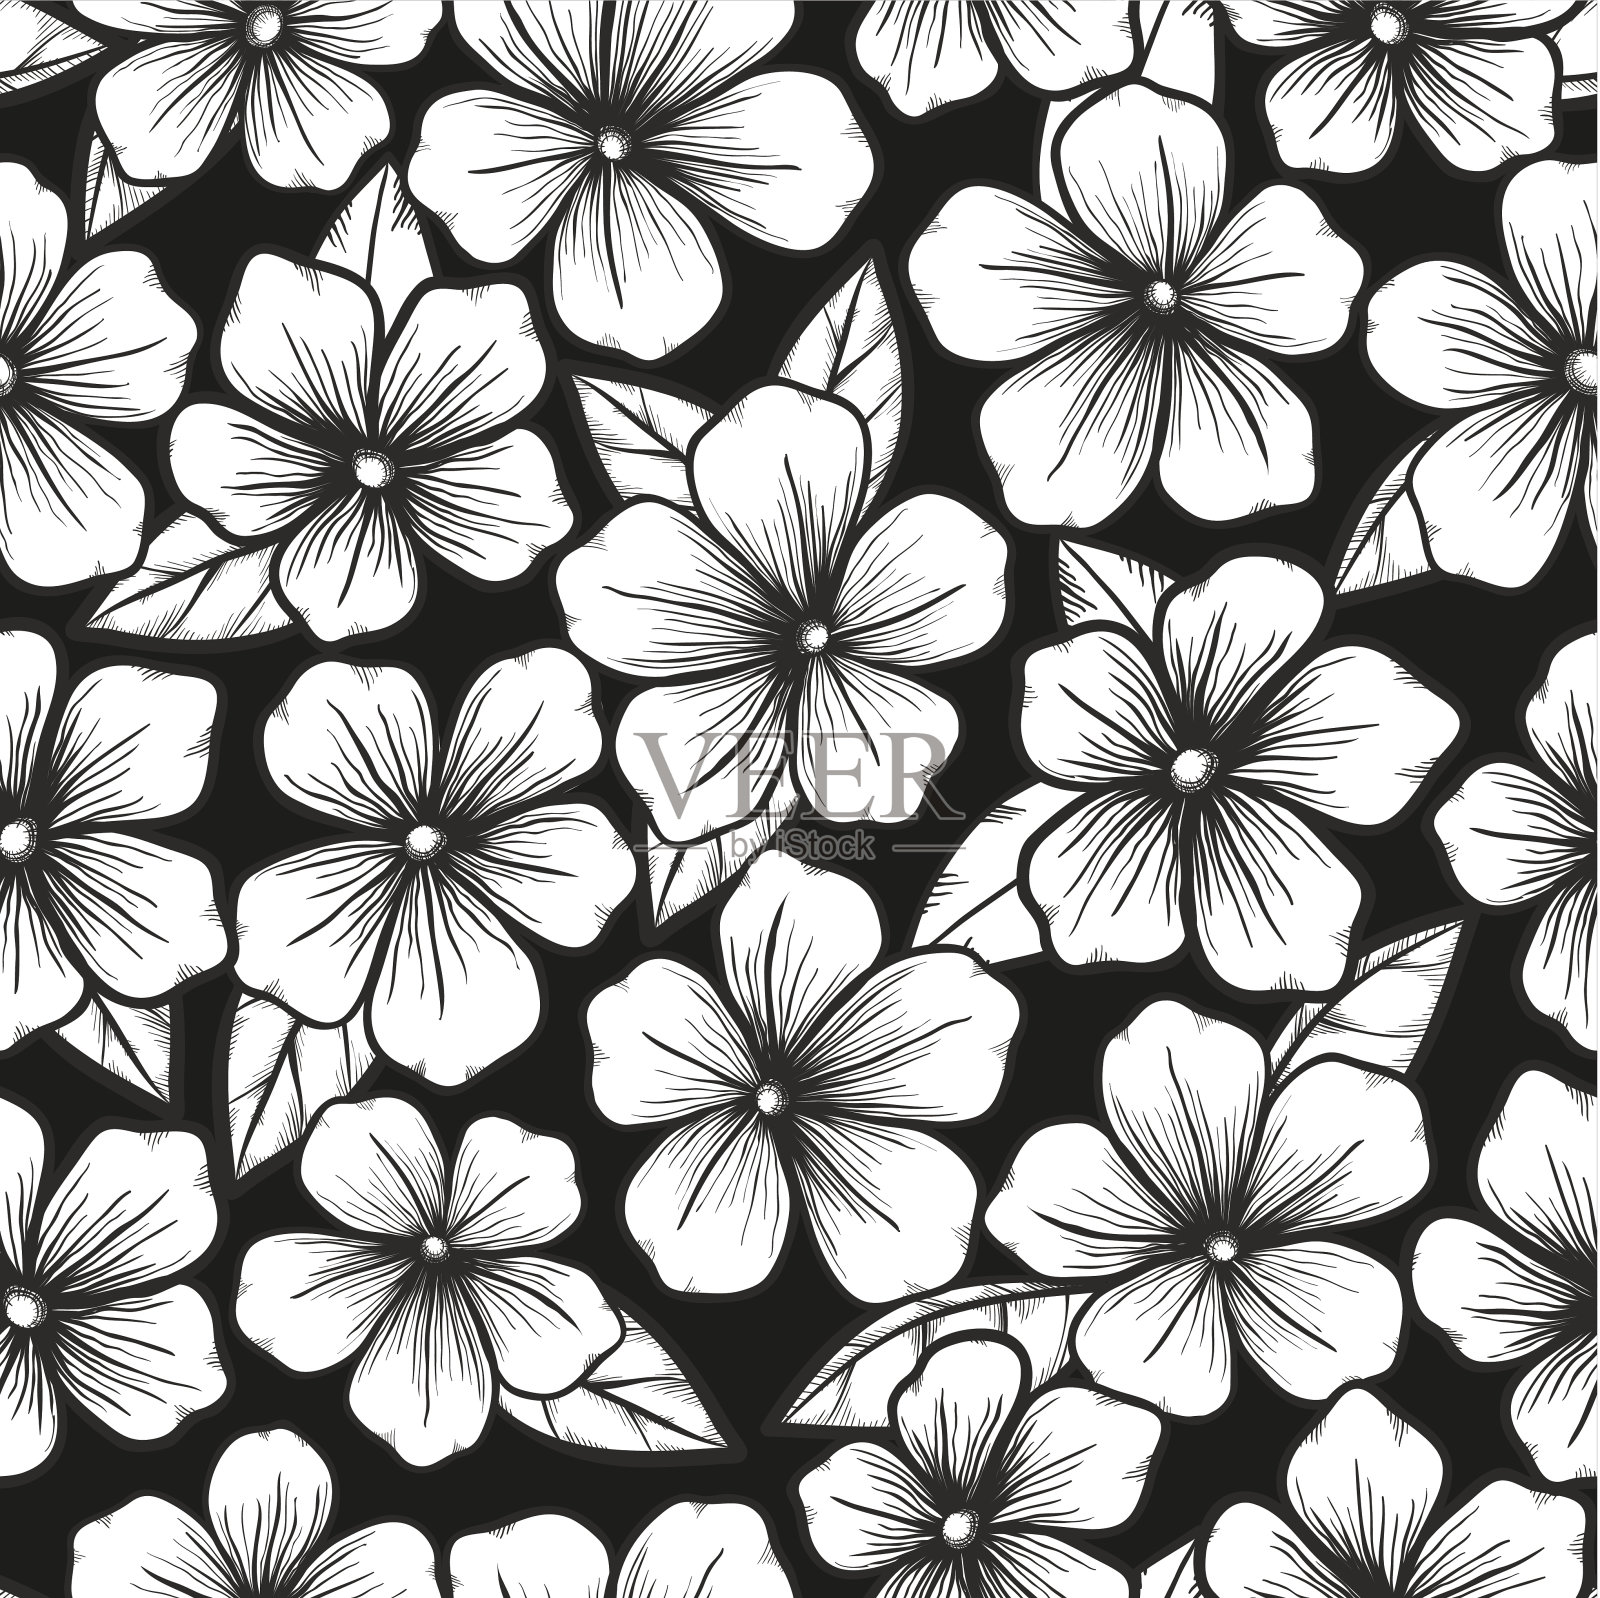 黑白无缝背景与图形的花朵轮廓插画图片素材